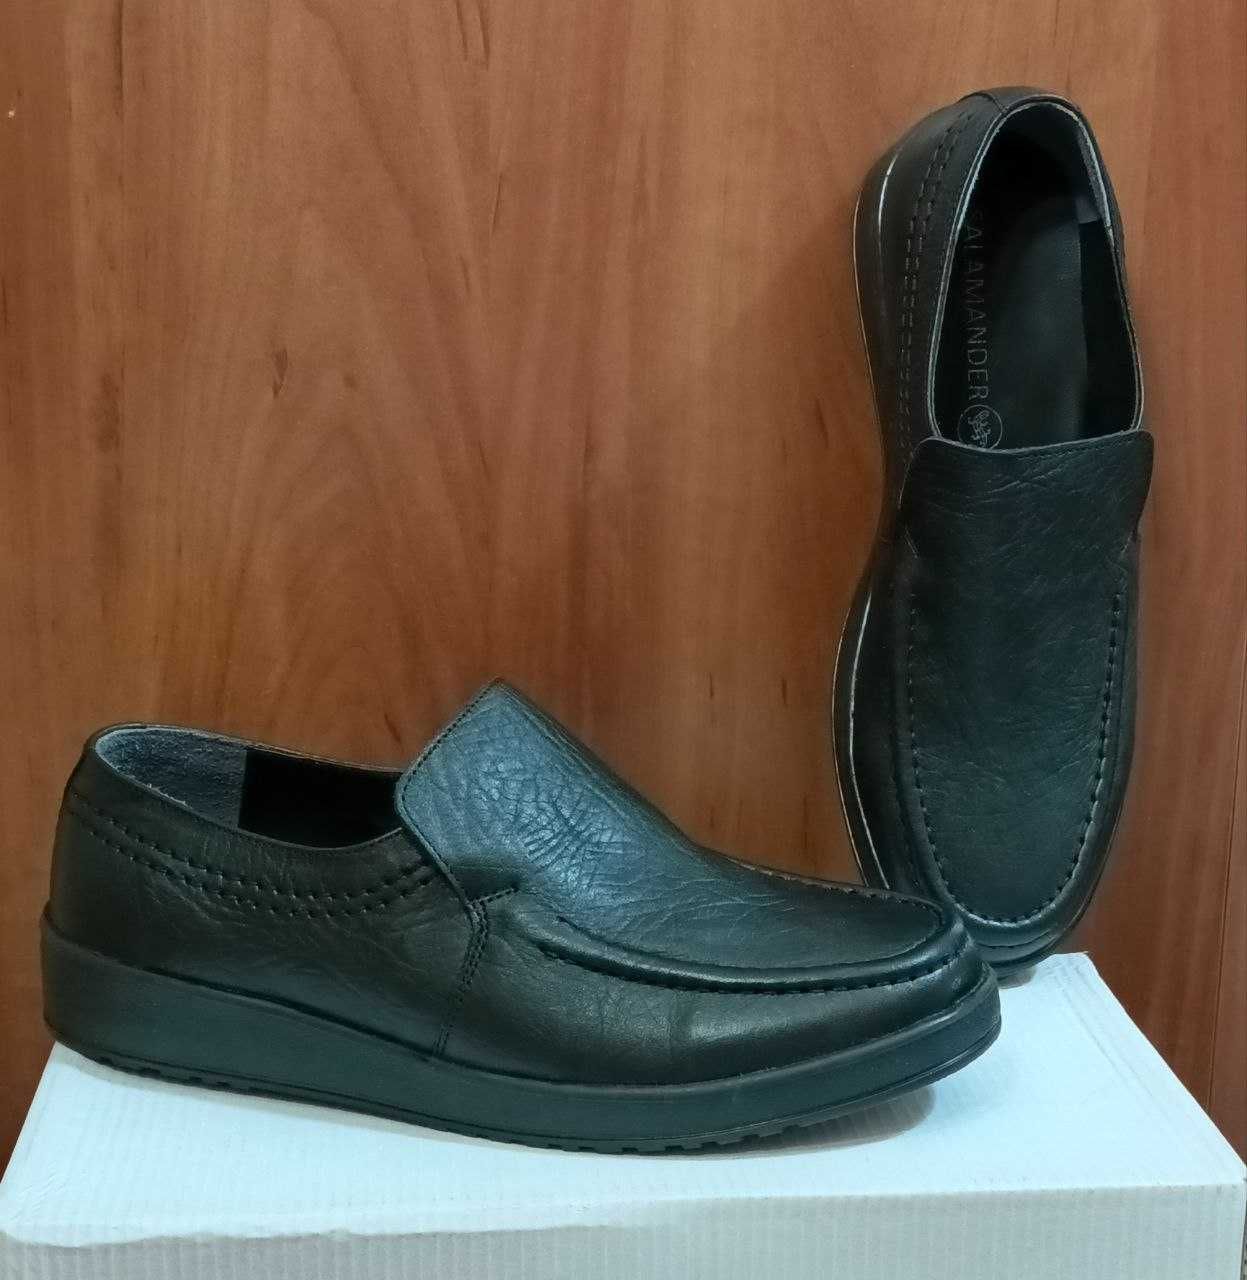 Туфли качественные  кожаные классика производство Турция .